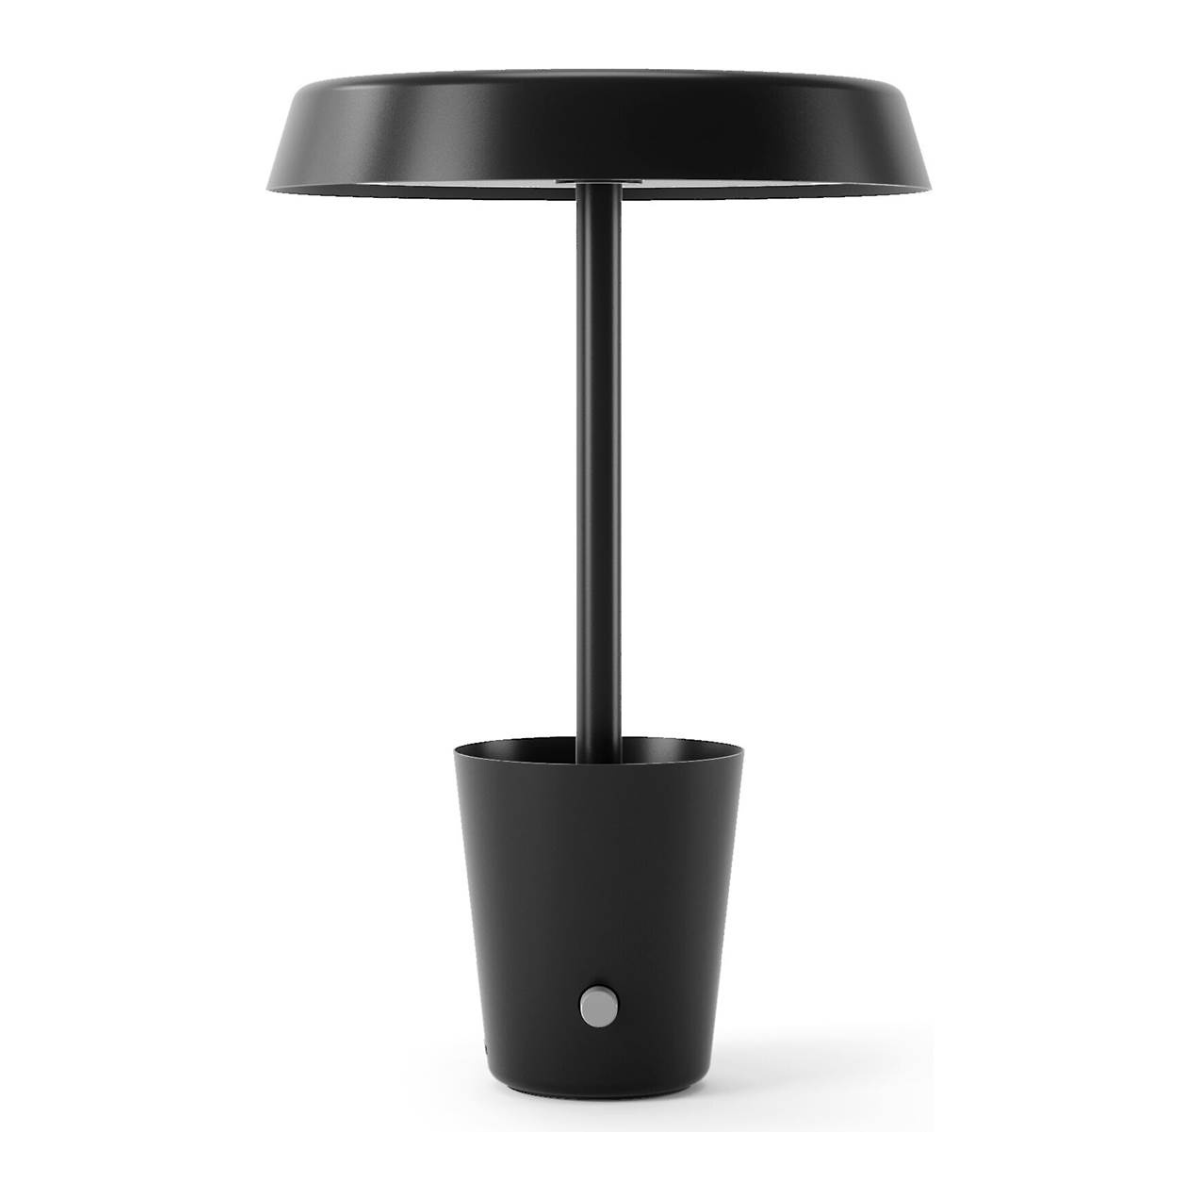 The Nanoleaf Umbra Cup Smart Lamp 